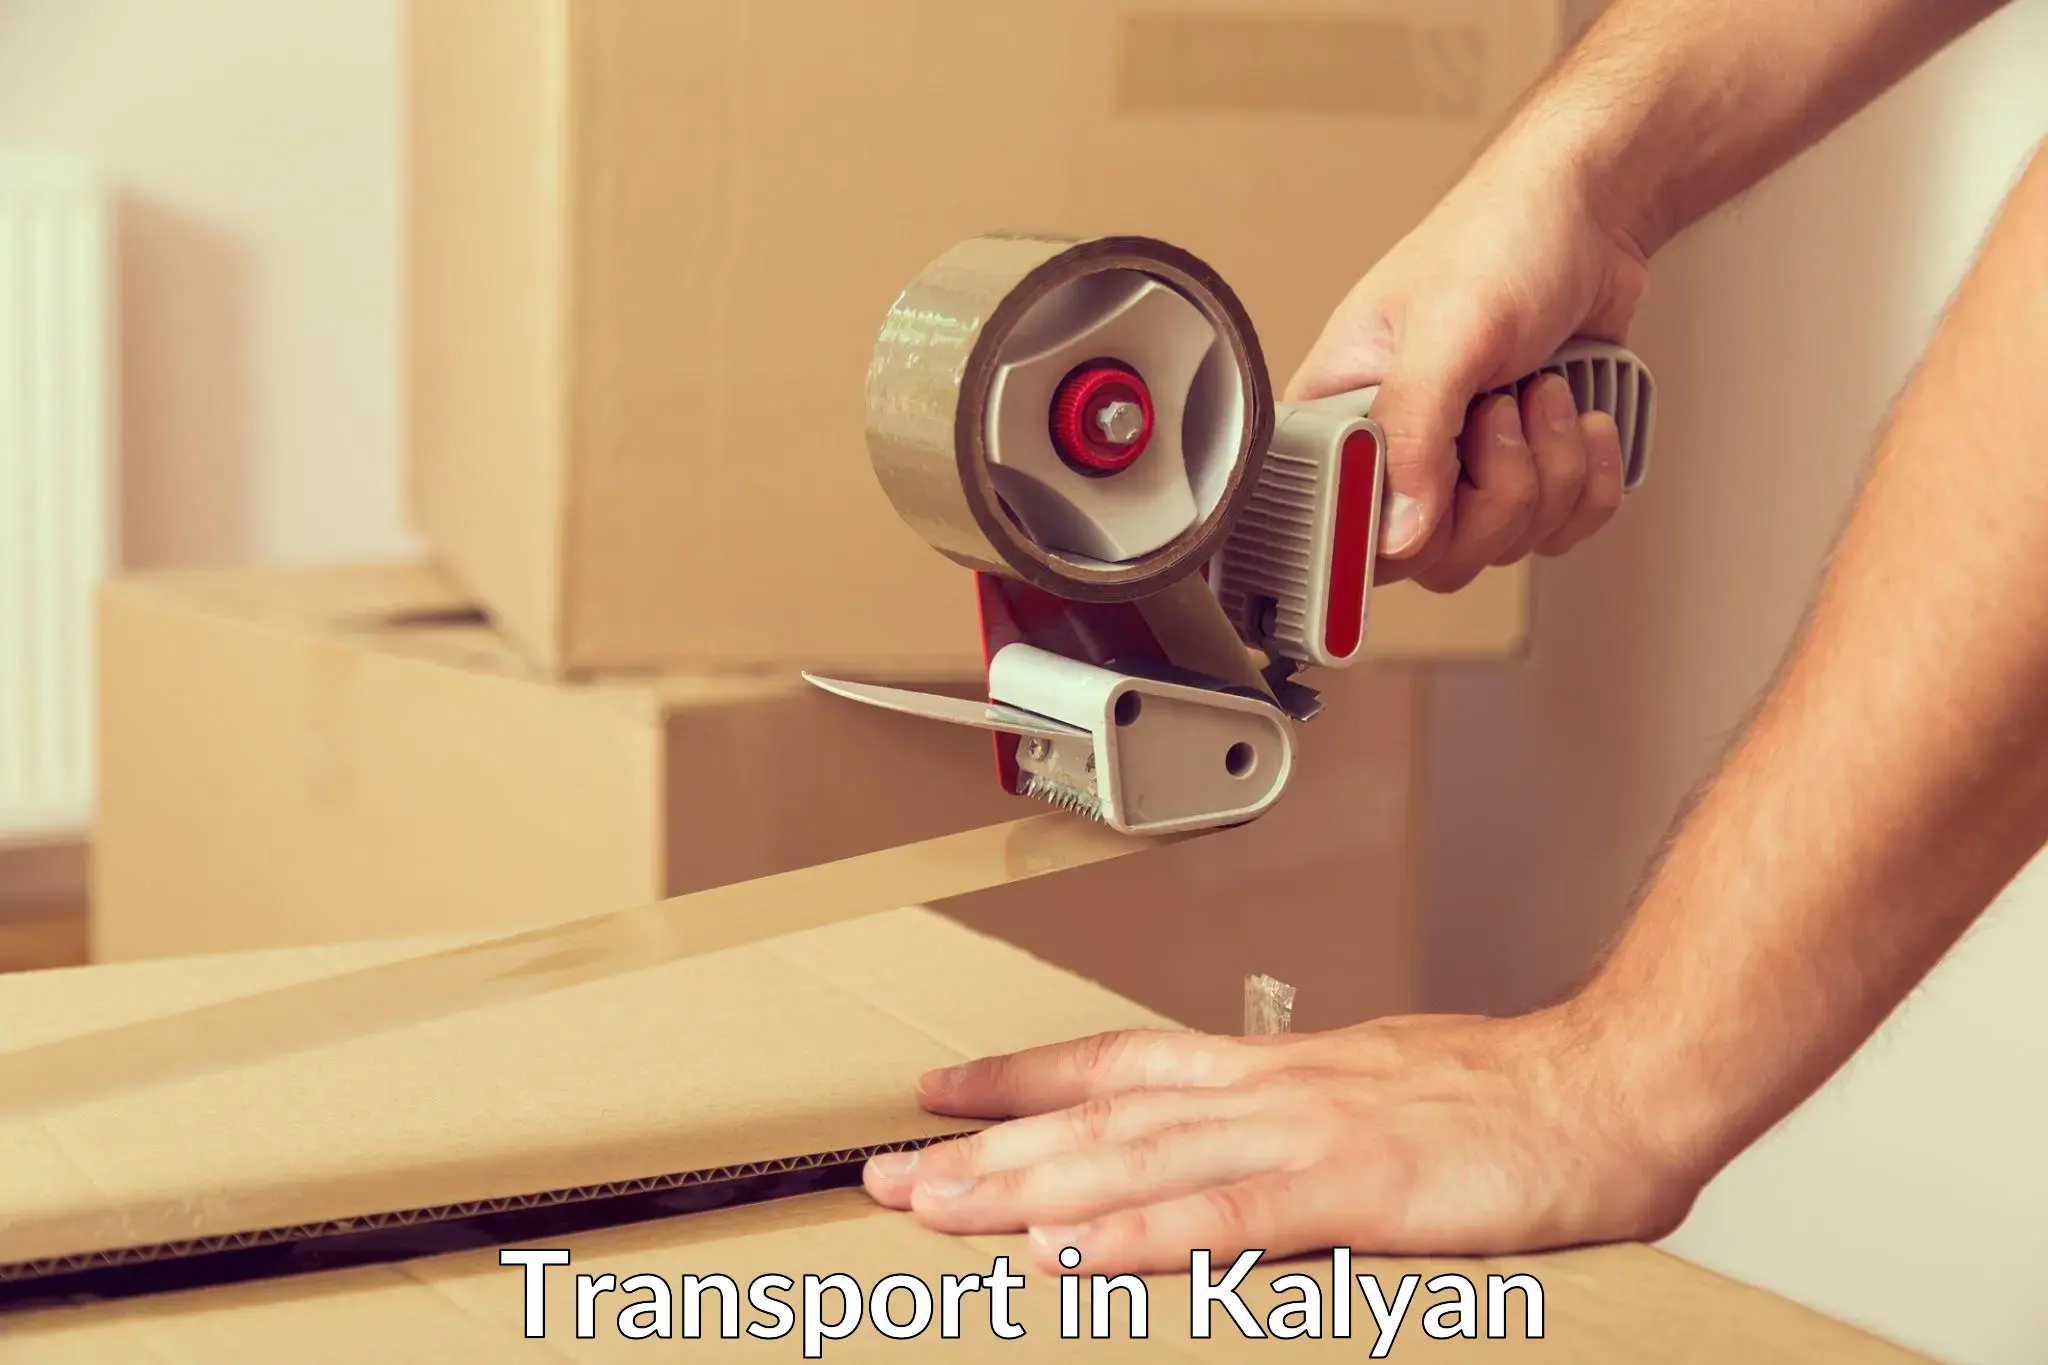 Land transport services in Kalyan